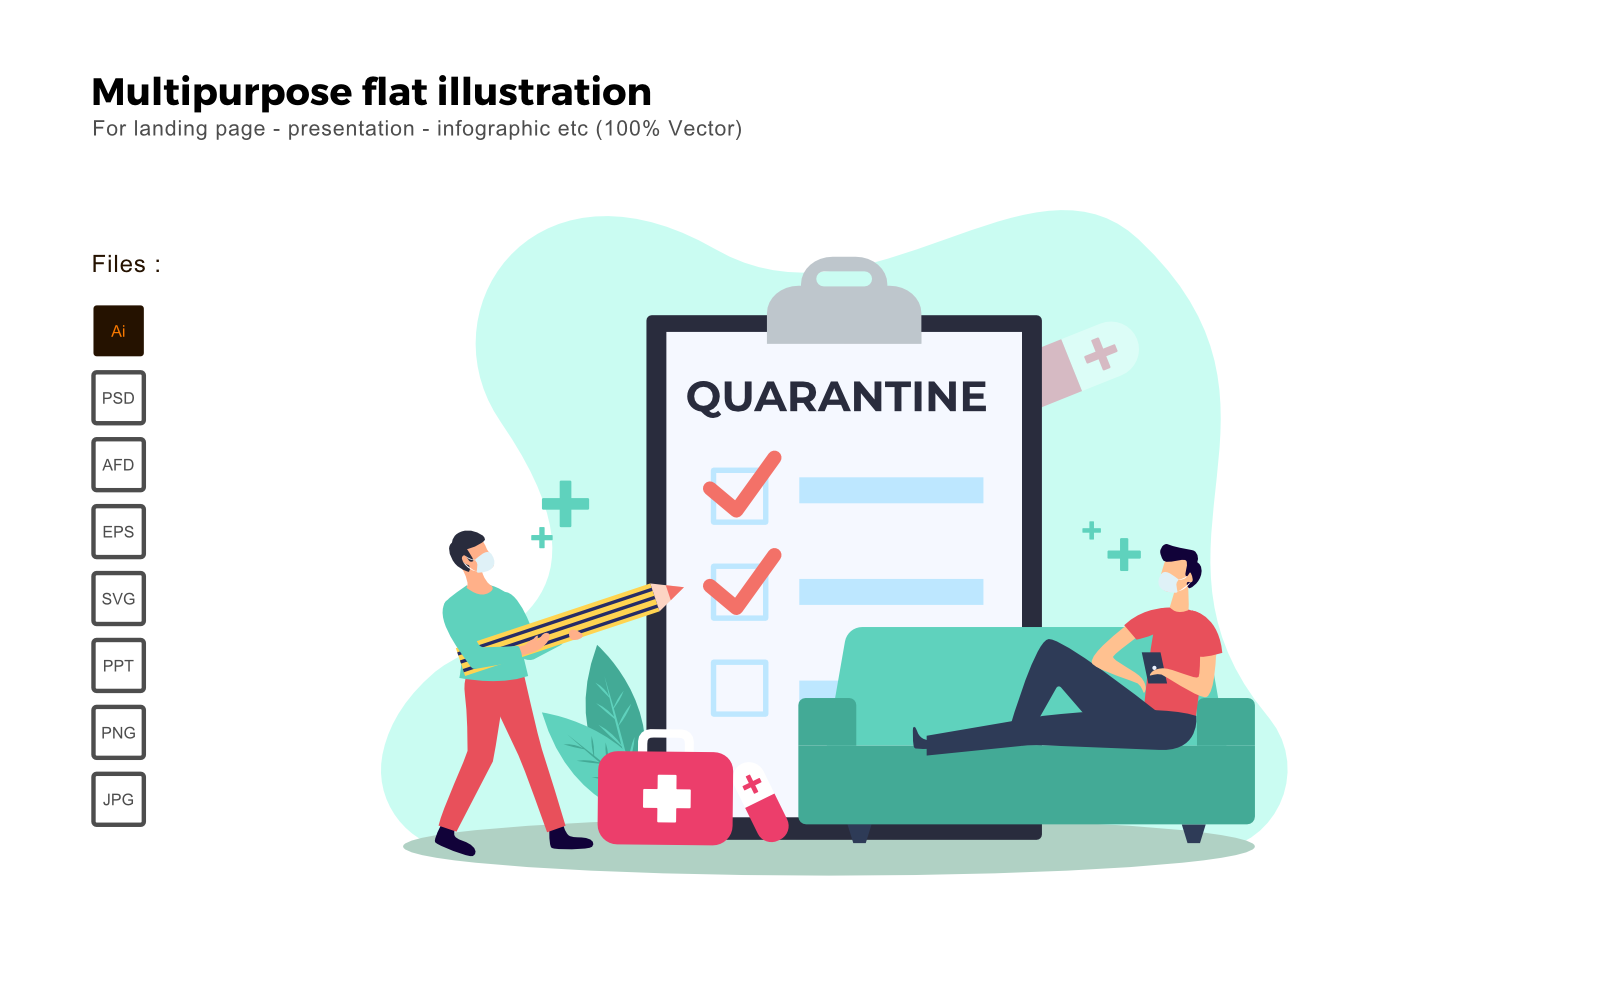 Multipurpose Flat Illustration Quarantine - Vector Image